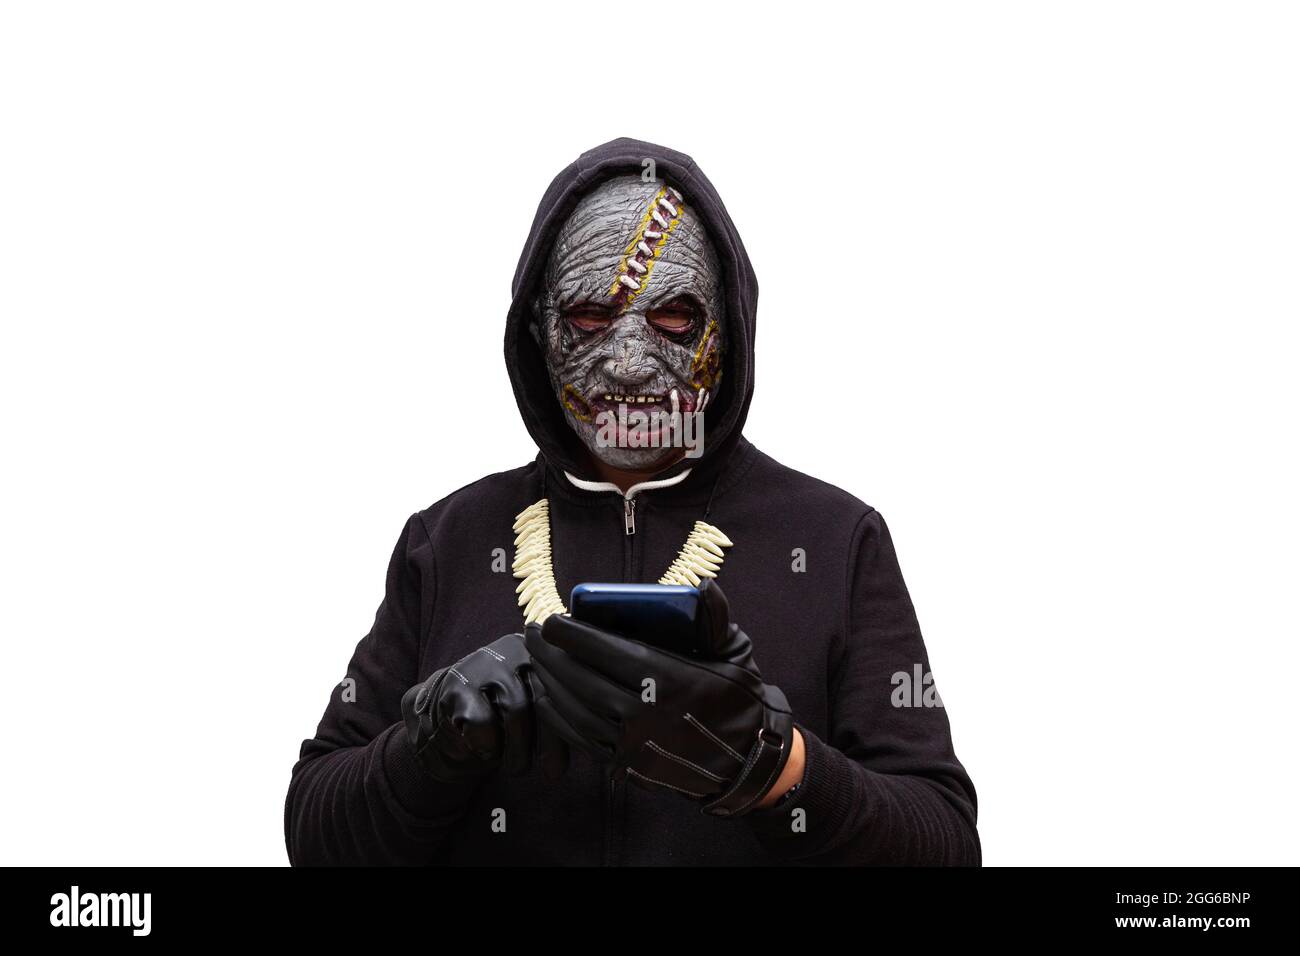 Ein Mann, der in einer Zombie-Maske verkleidet ist und ein schwarzes Kapuzen-Sweatshirt trägt, berührt den Touchscreen eines Mobiltelefons. Stockfoto